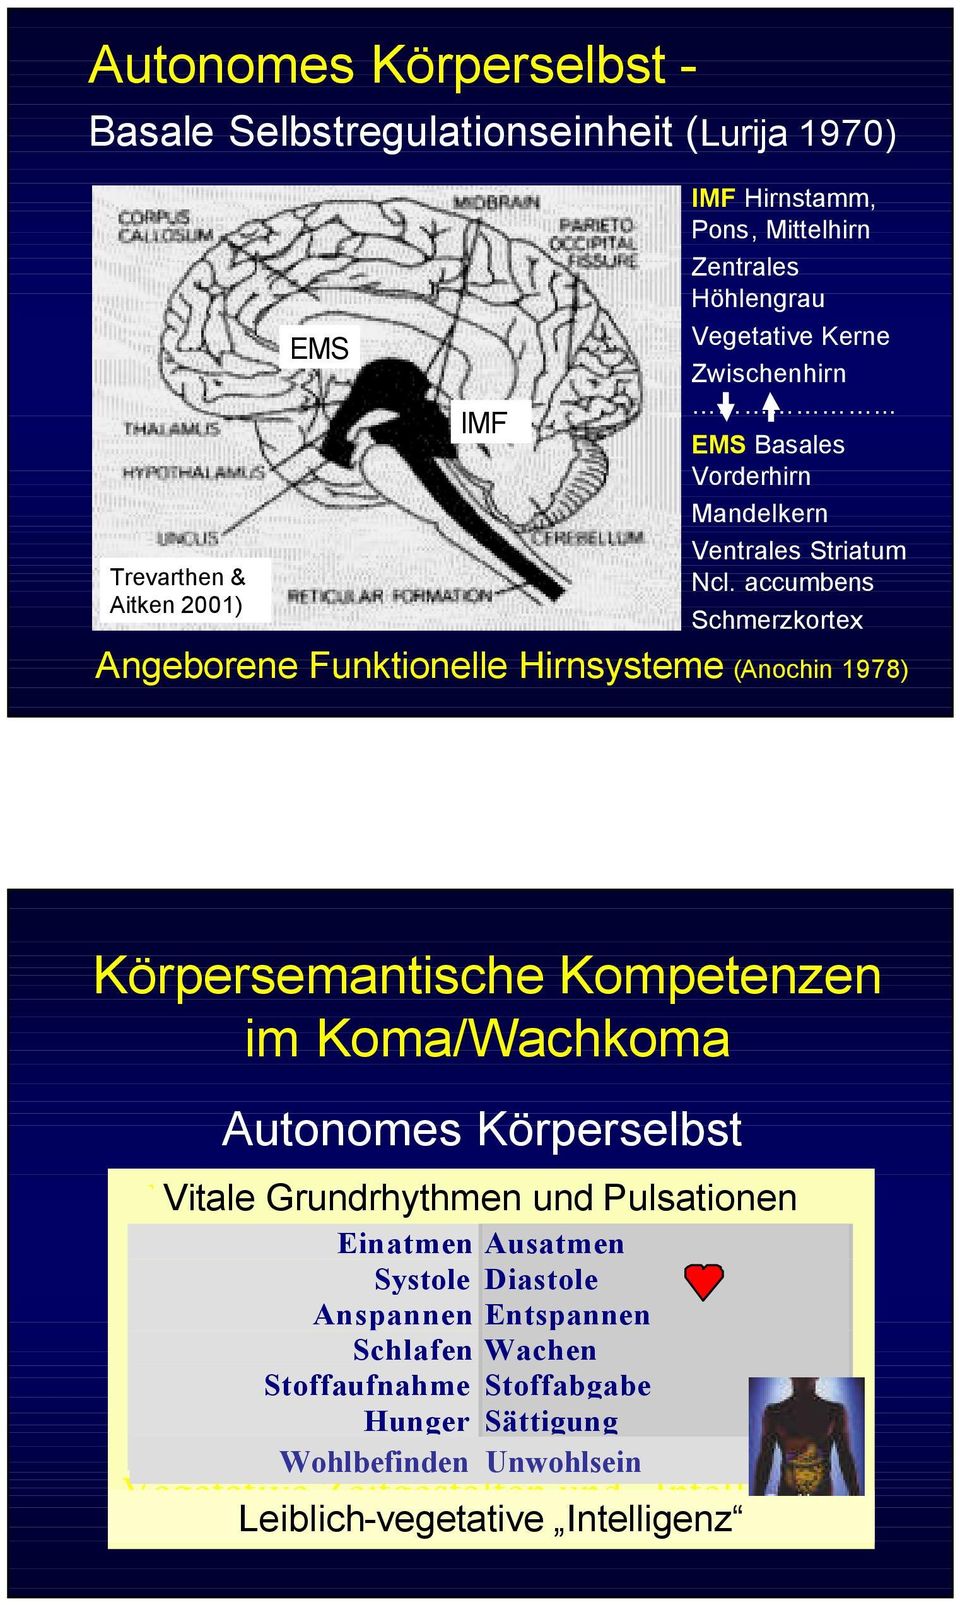 accumbens Schmerzkortex Angeborene Funktionelle Hirnsysteme (Anochin 1978) Körpersemantische Kompetenzen im Koma/Wachkoma Autonomes Körperselbst Vitale